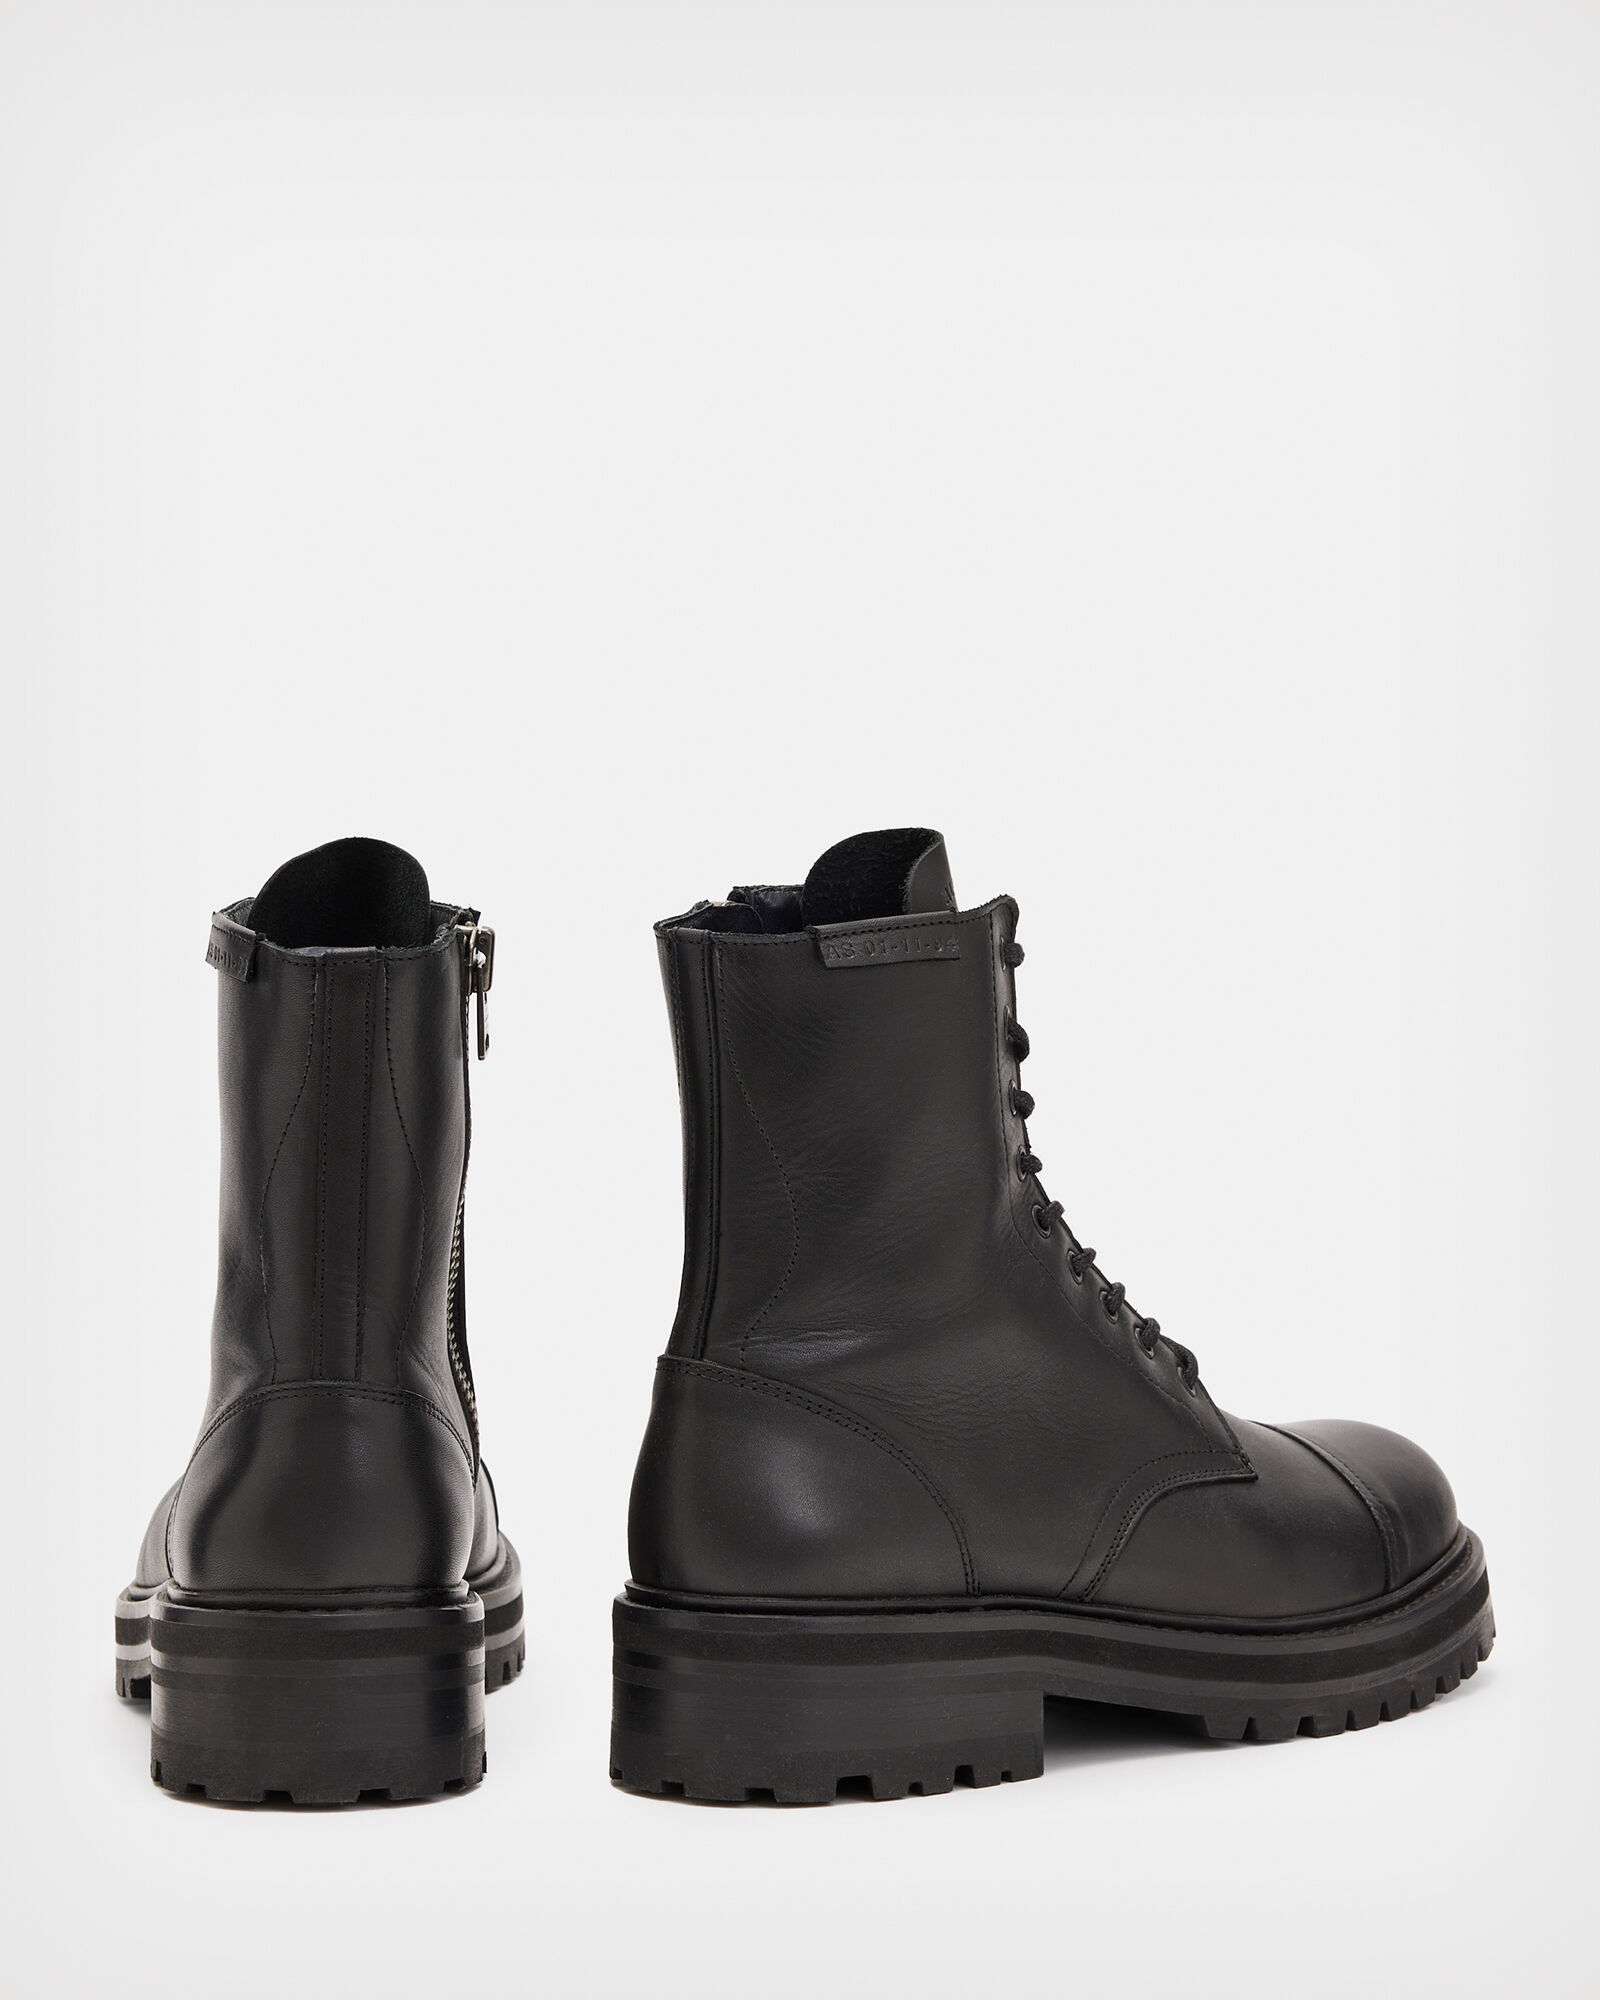 Hank Leather Boots Black | ALLSAINTS US